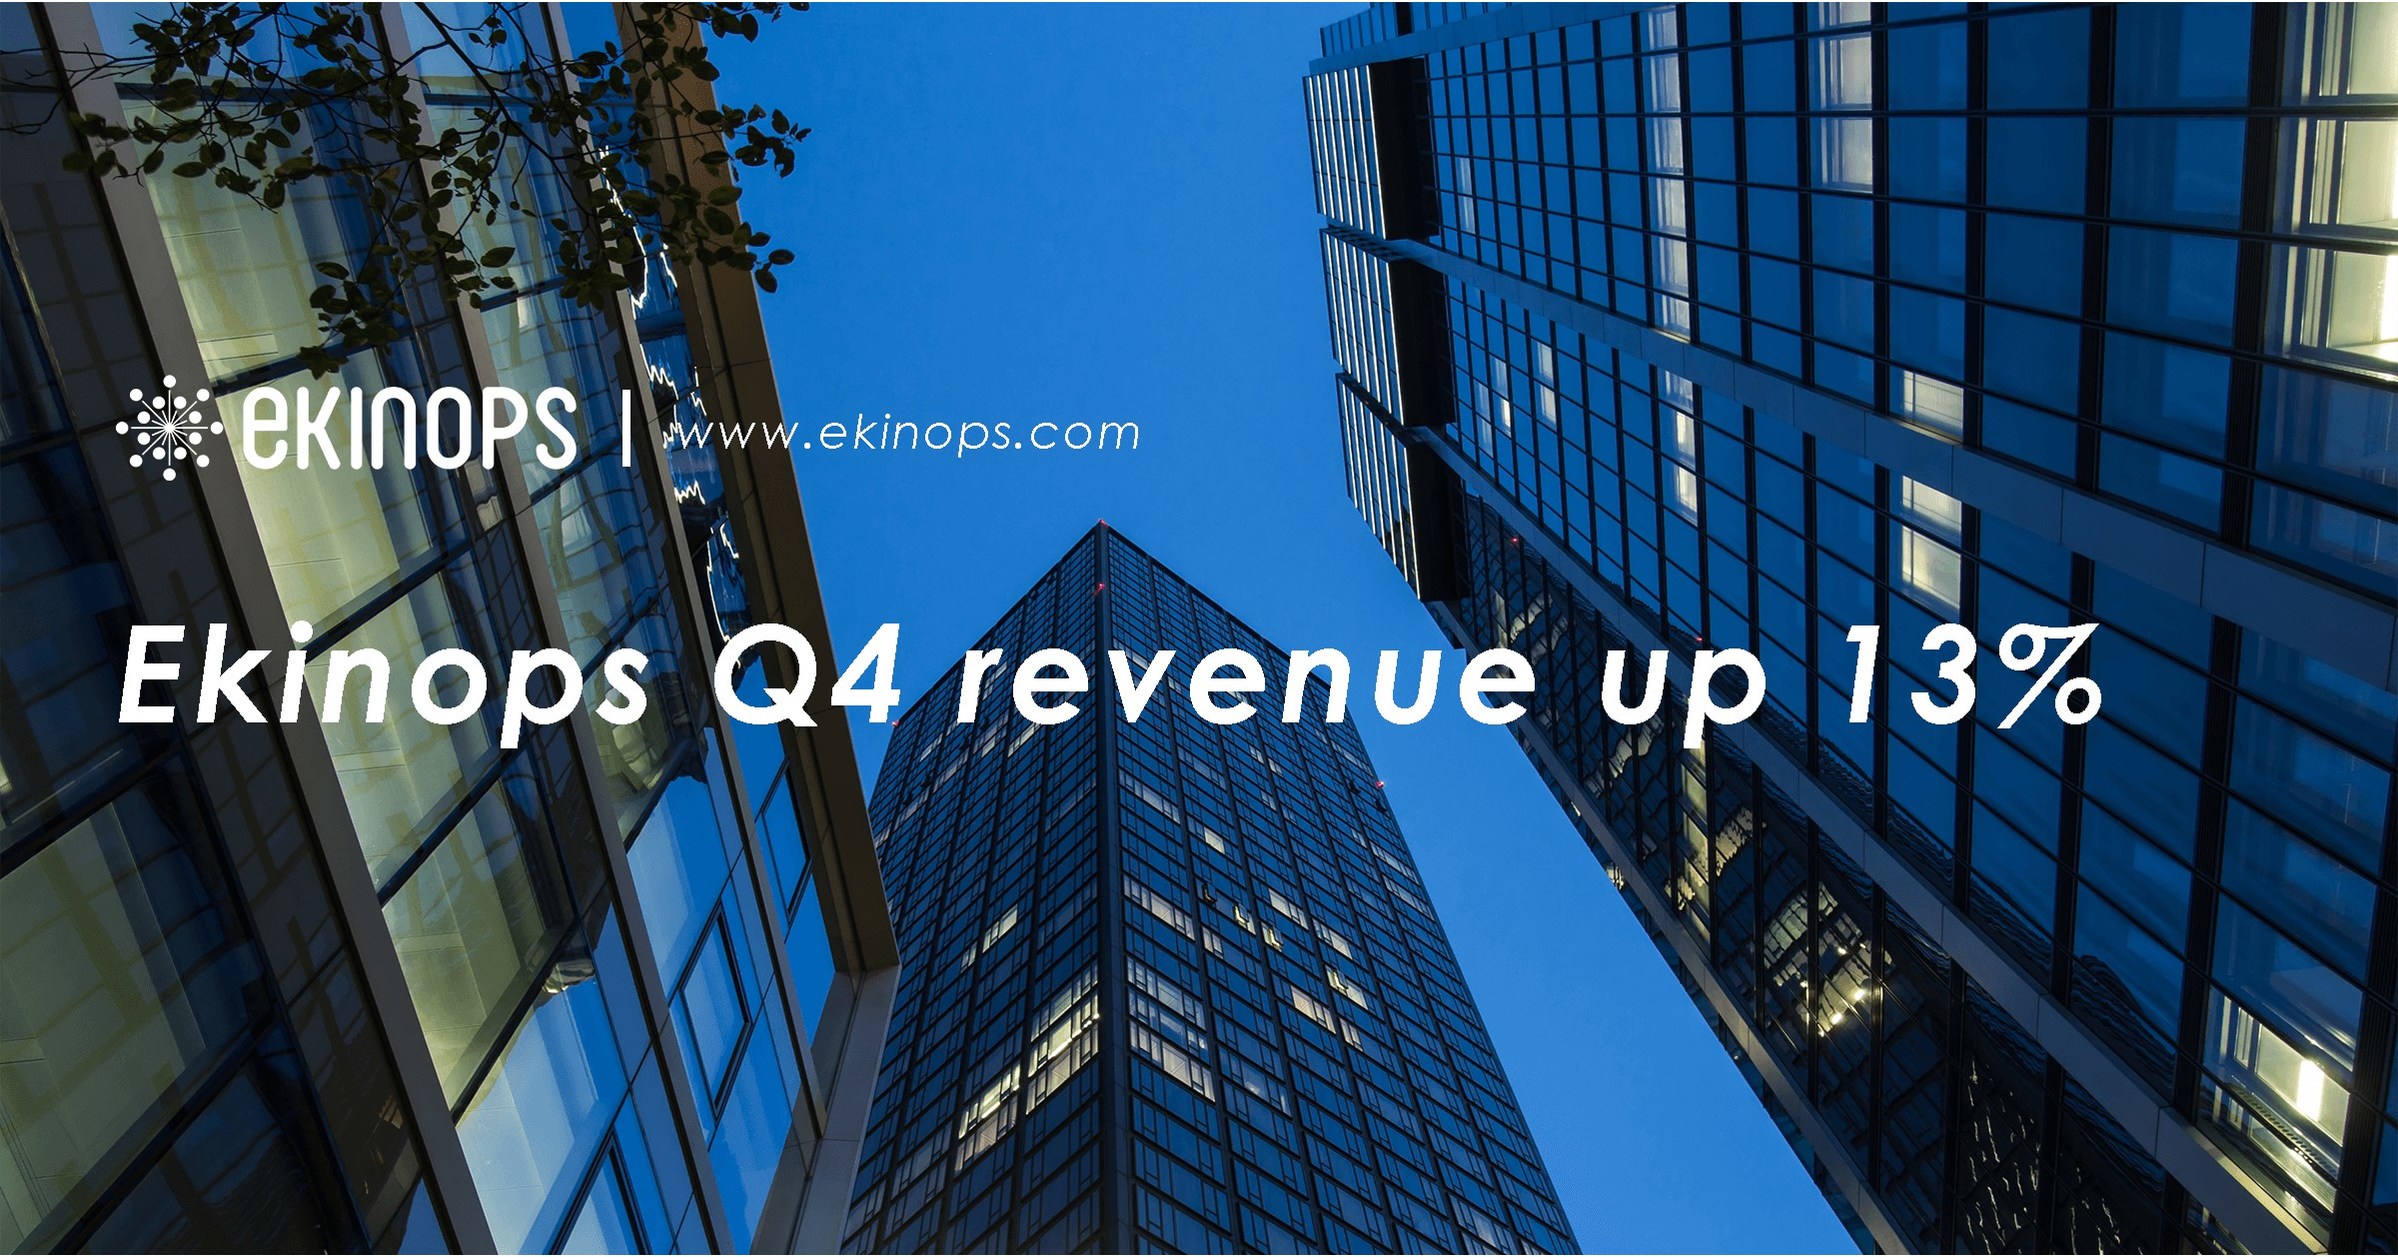 Ekinops Q4 revenue up 13%